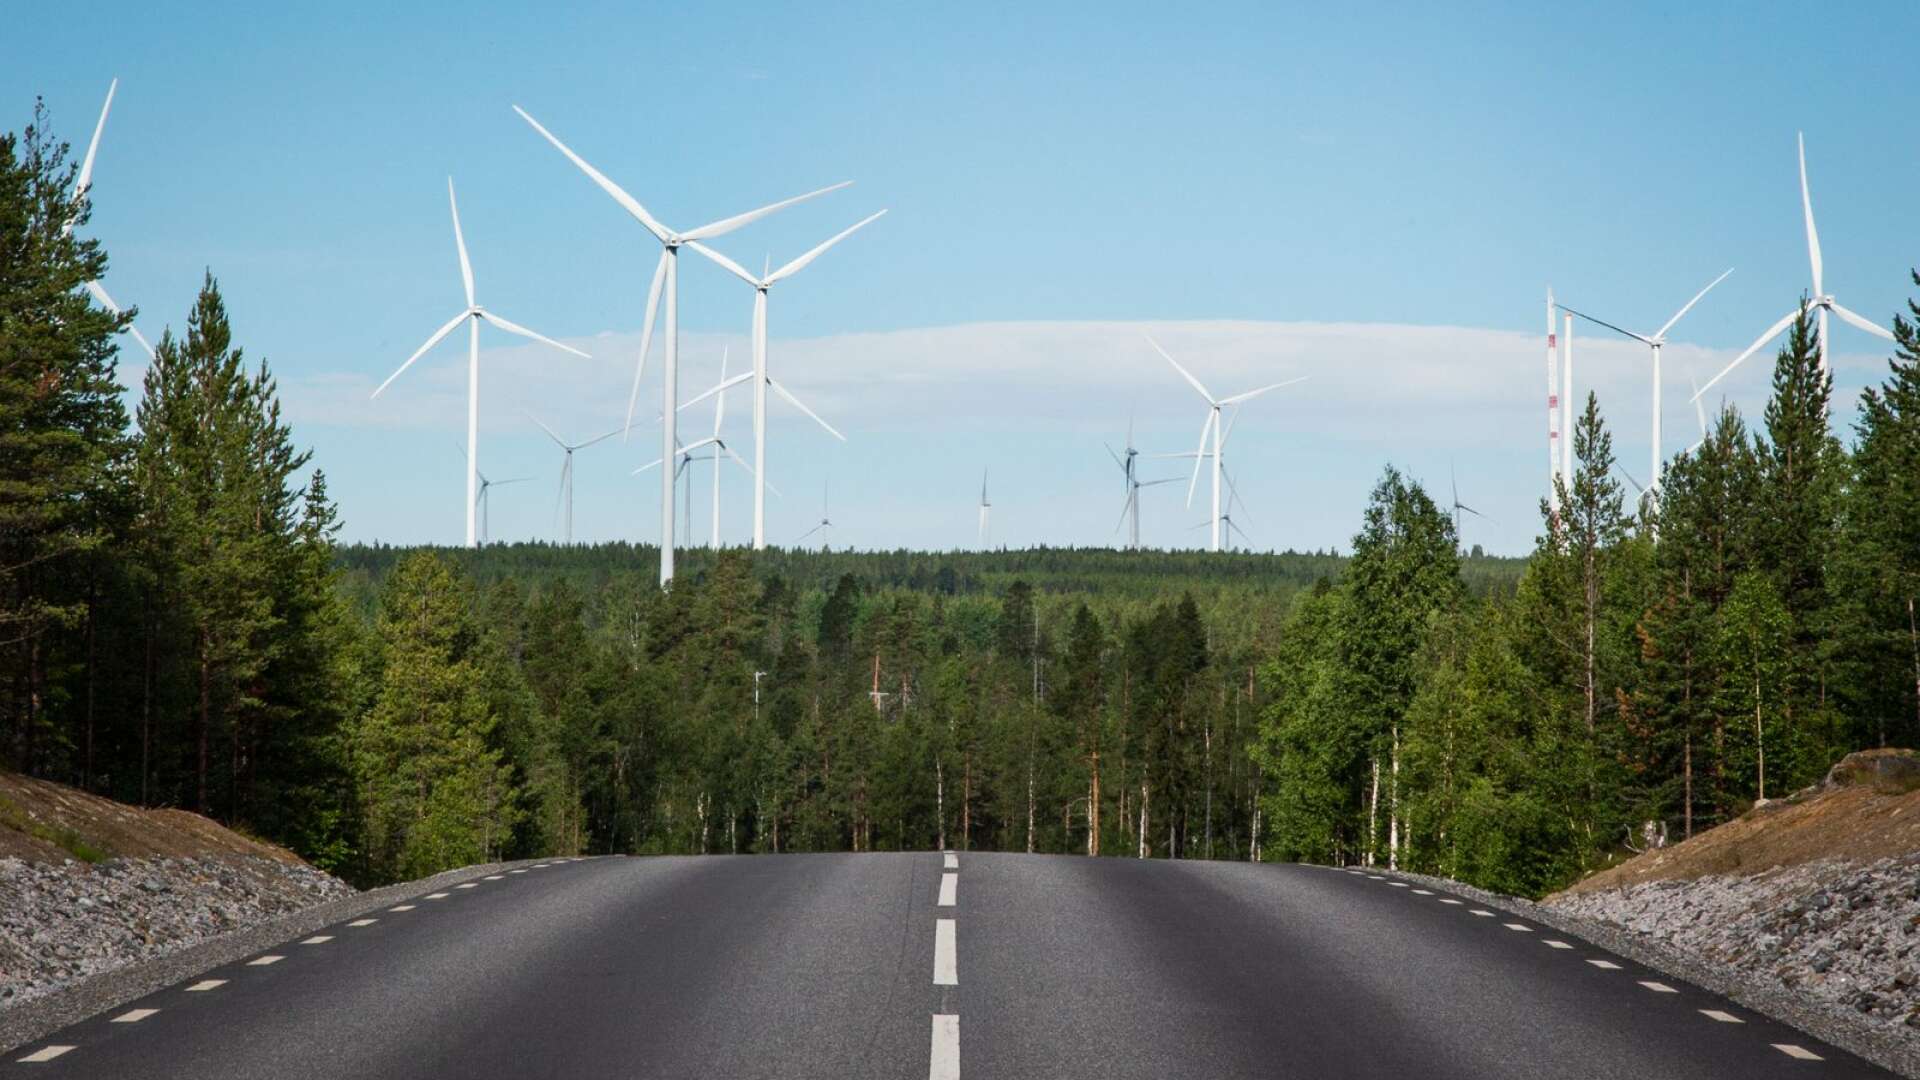 Det är osannolikt lyckliga omständigheter som skapat denna möjlighet för Grums kommun att bli en ansvarstagande del av Värmlands långsiktiga hållbara energiförsörjning, skriver insändarskribenten. Genrebild.